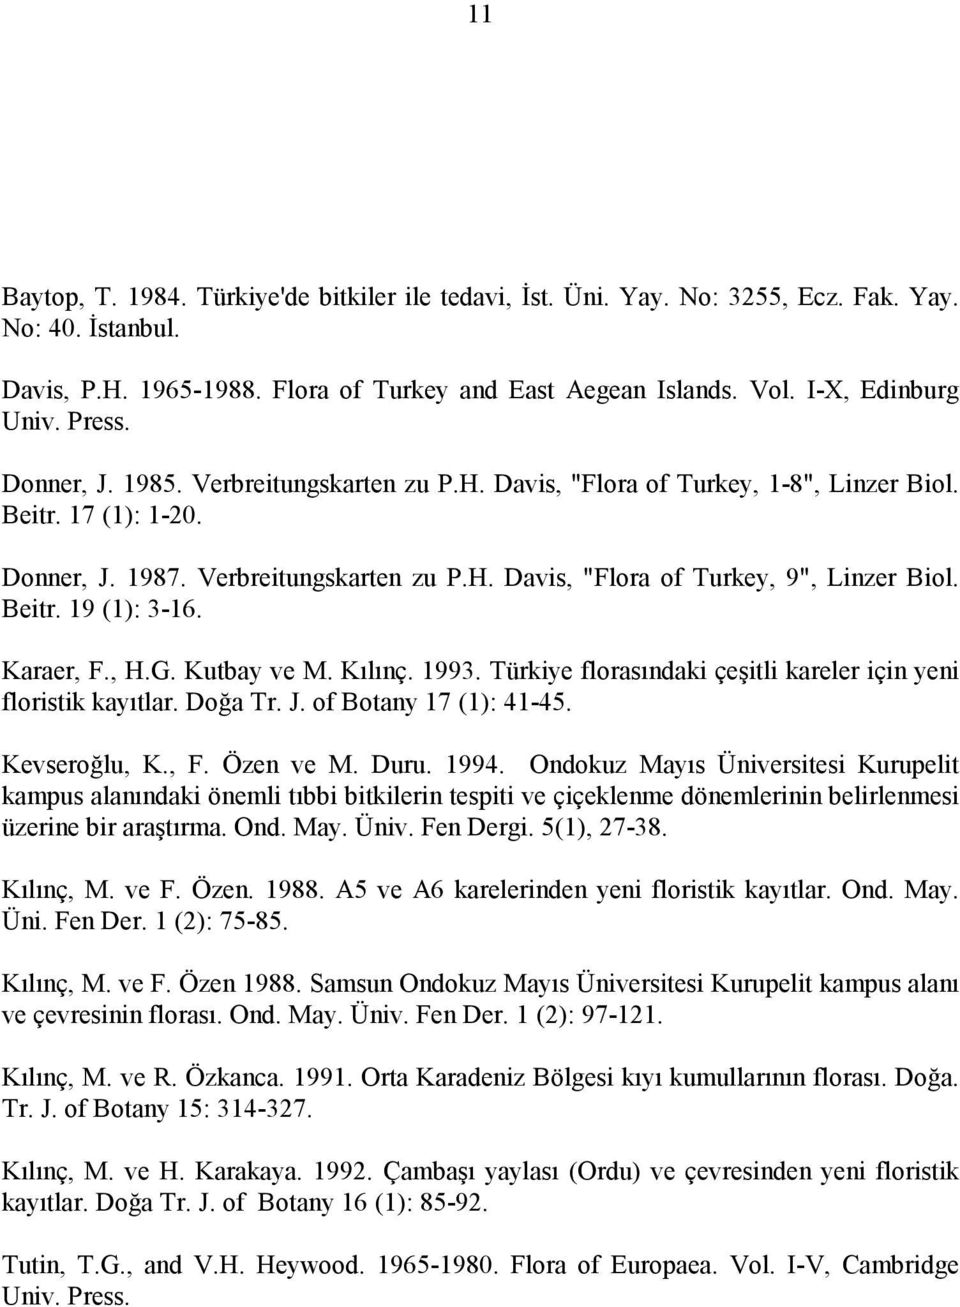 Beitr. 19 (1): 3-16. Karaer, F., H.G. Kutbay ve M. Kılınç. 1993. Türkiye florasındaki çeşitli kareler için yeni floristik kayıtlar. Doğa Tr. J. of Botany 17 (1): 41-45. Kevseroğlu, K., F. Özen ve M.